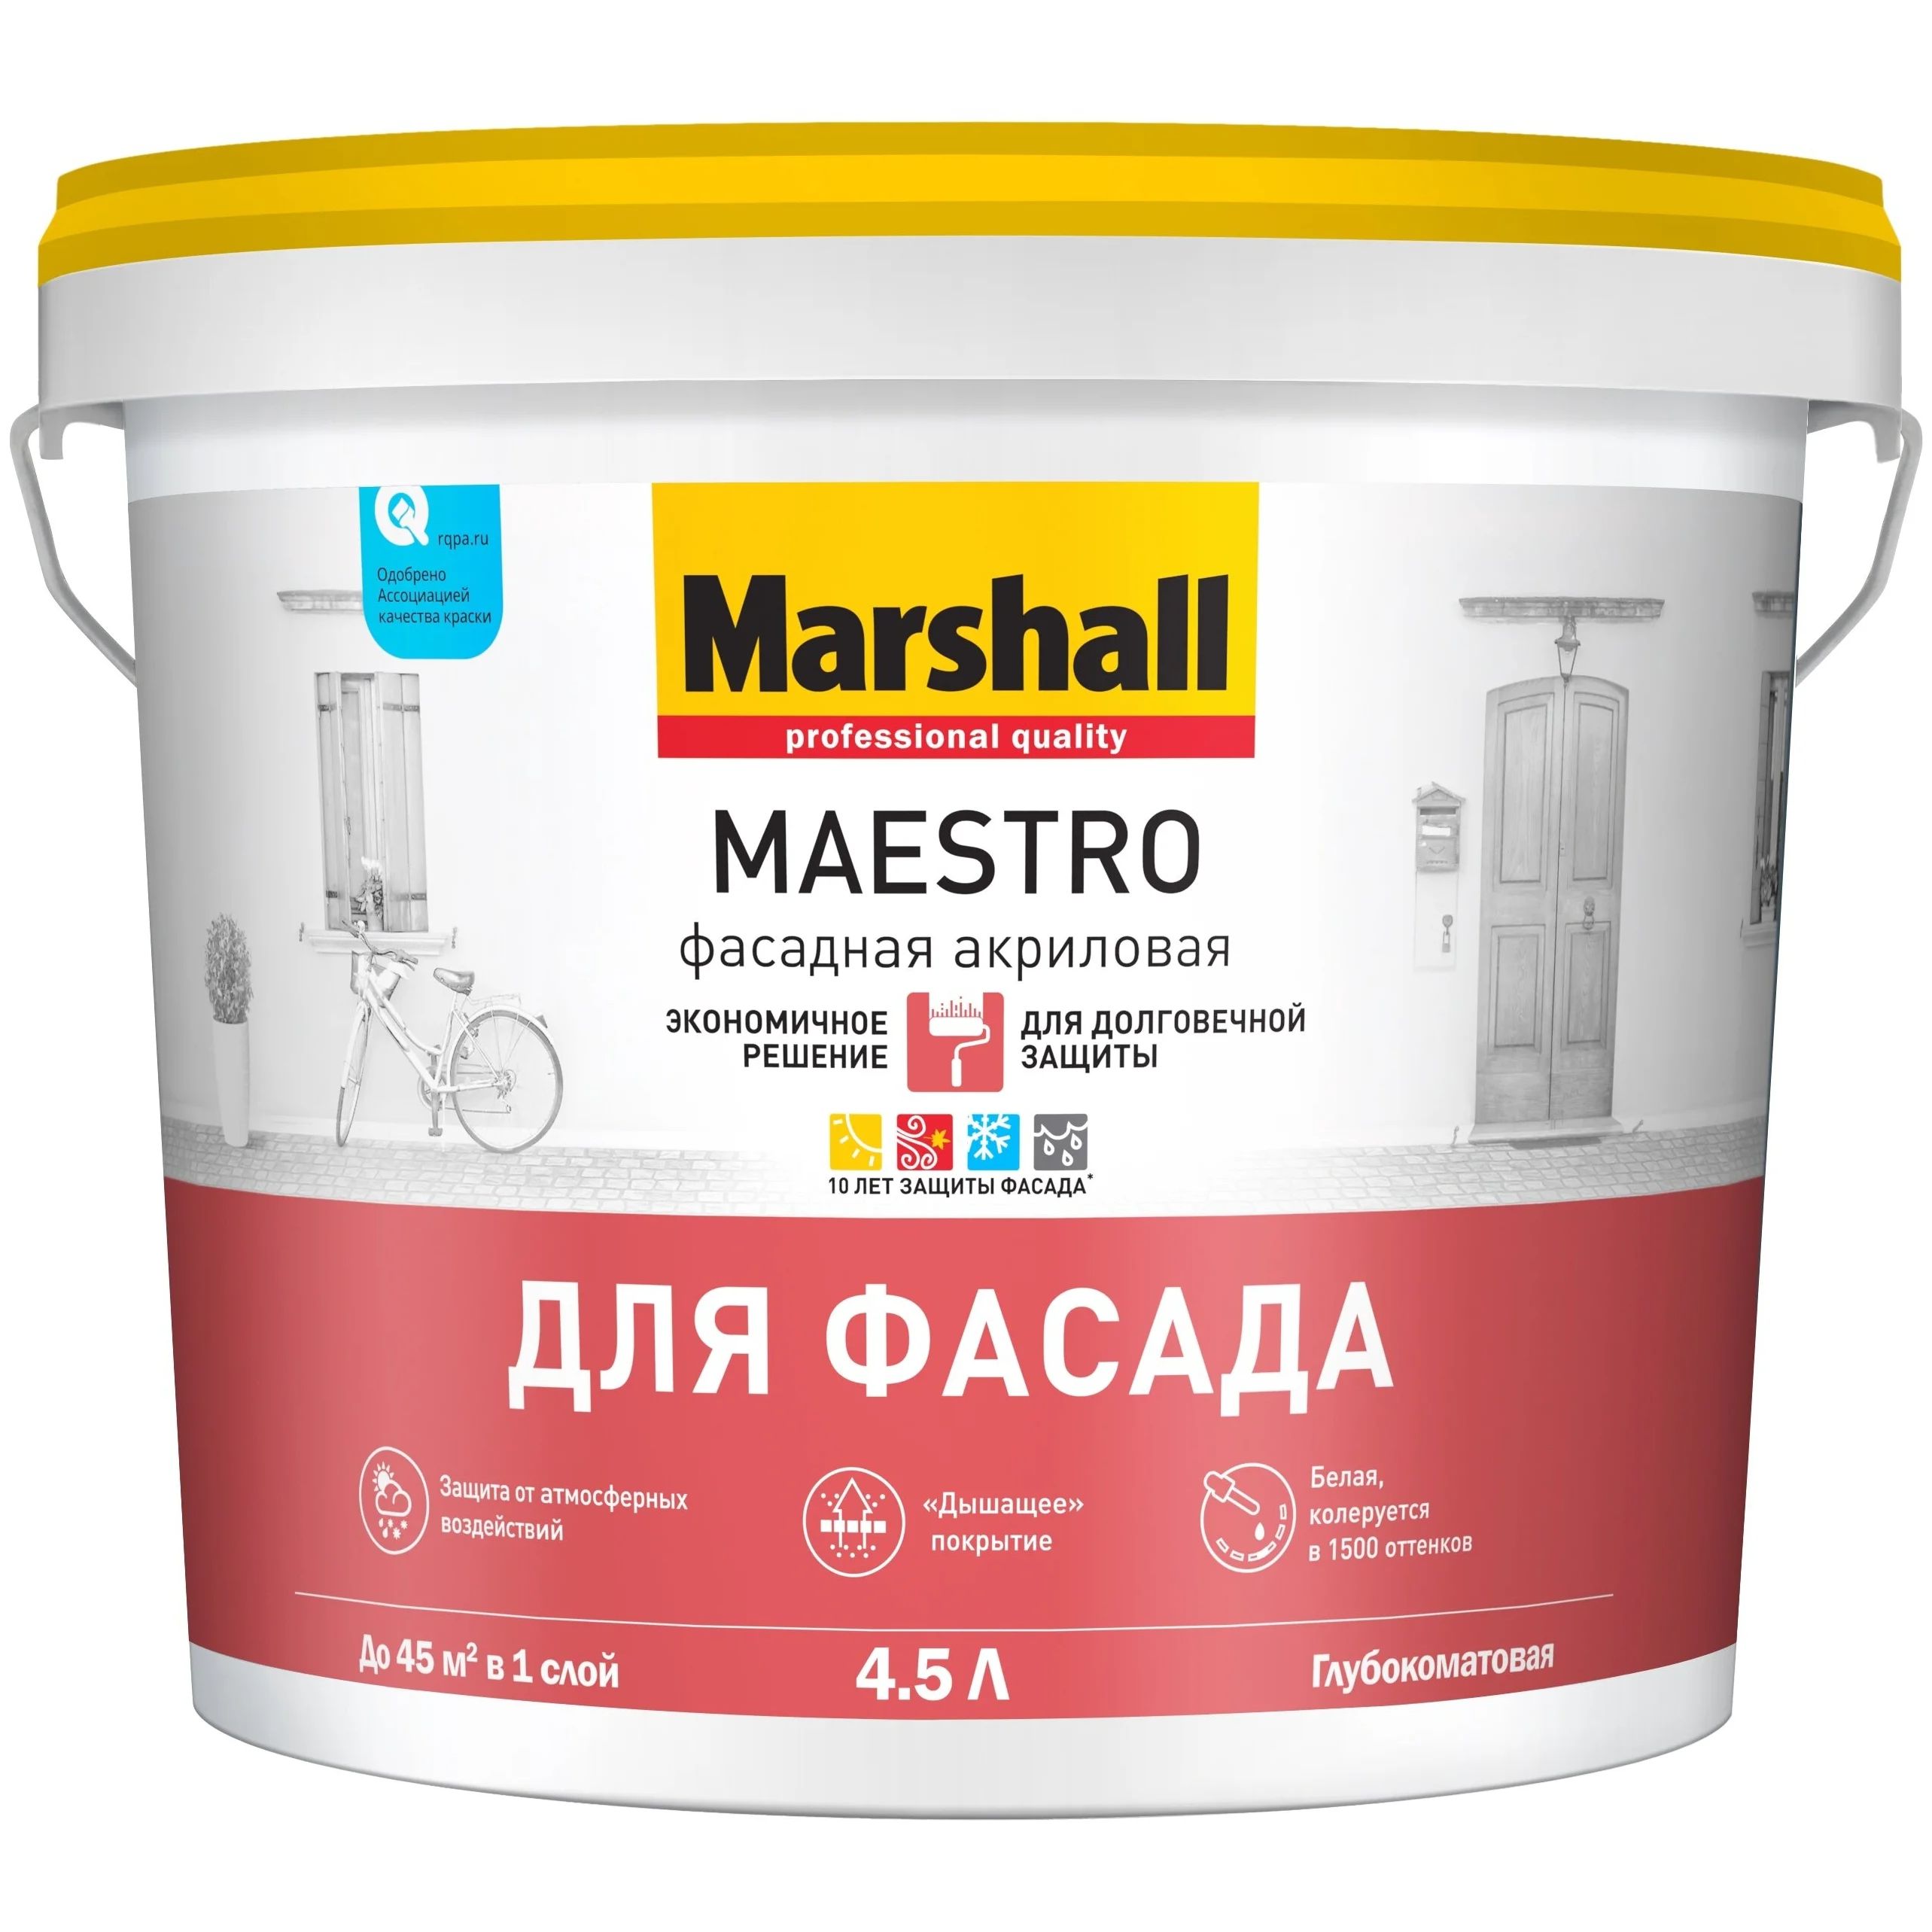 Краска Marshall Maestro фасадная акриловая, глубокоматовая, BC, 4,5 л краска marshall maestro фасадная акриловая глубокоматовая bc 9 л